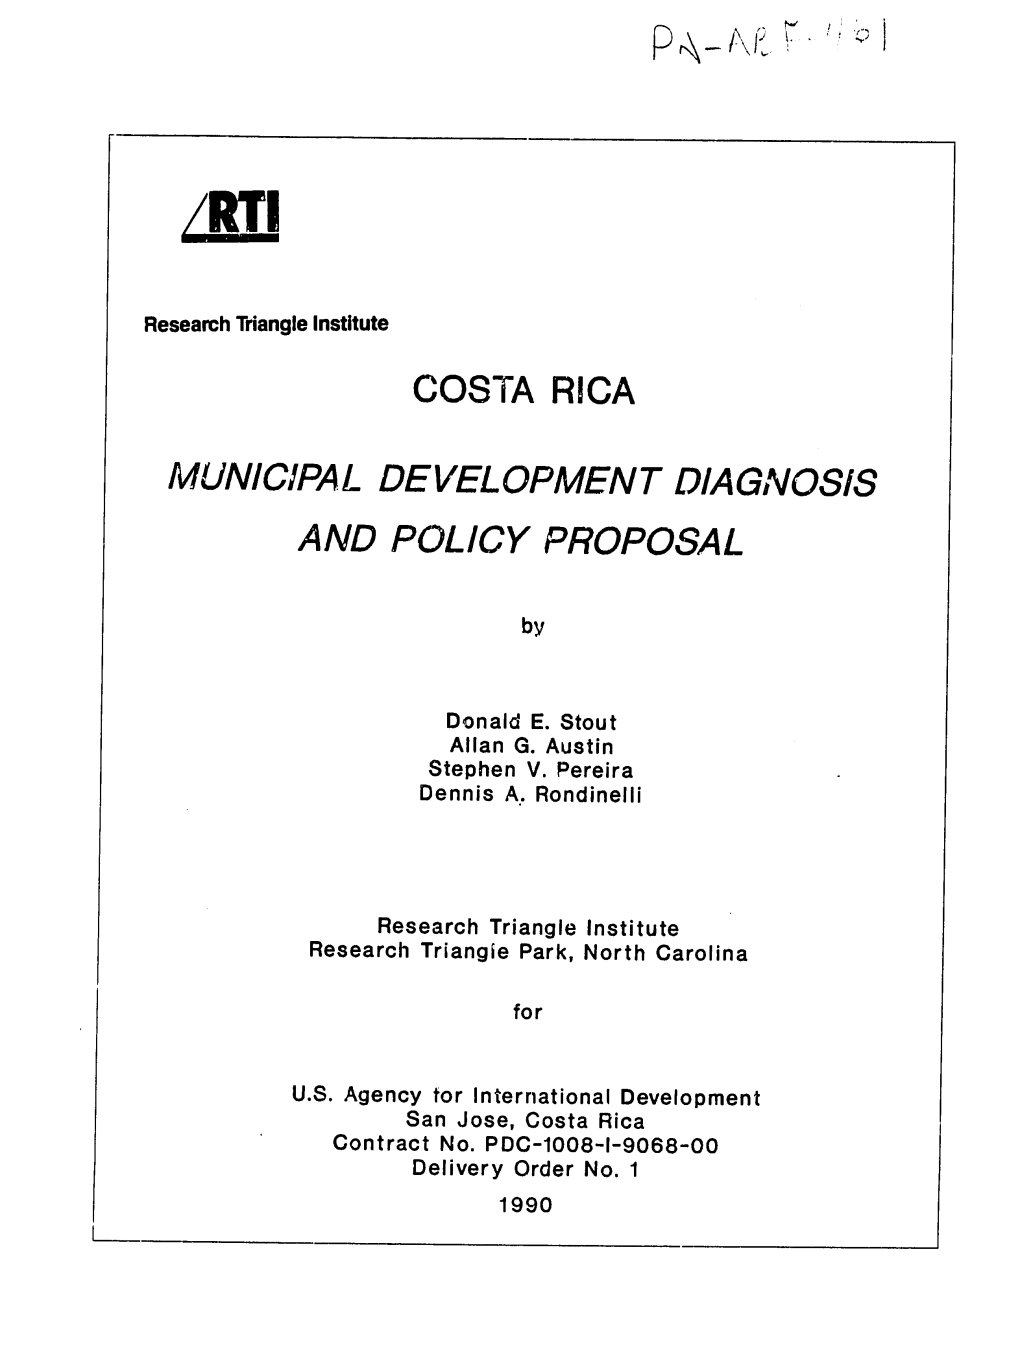 Costa Rica Municipal Development Diagnosis And